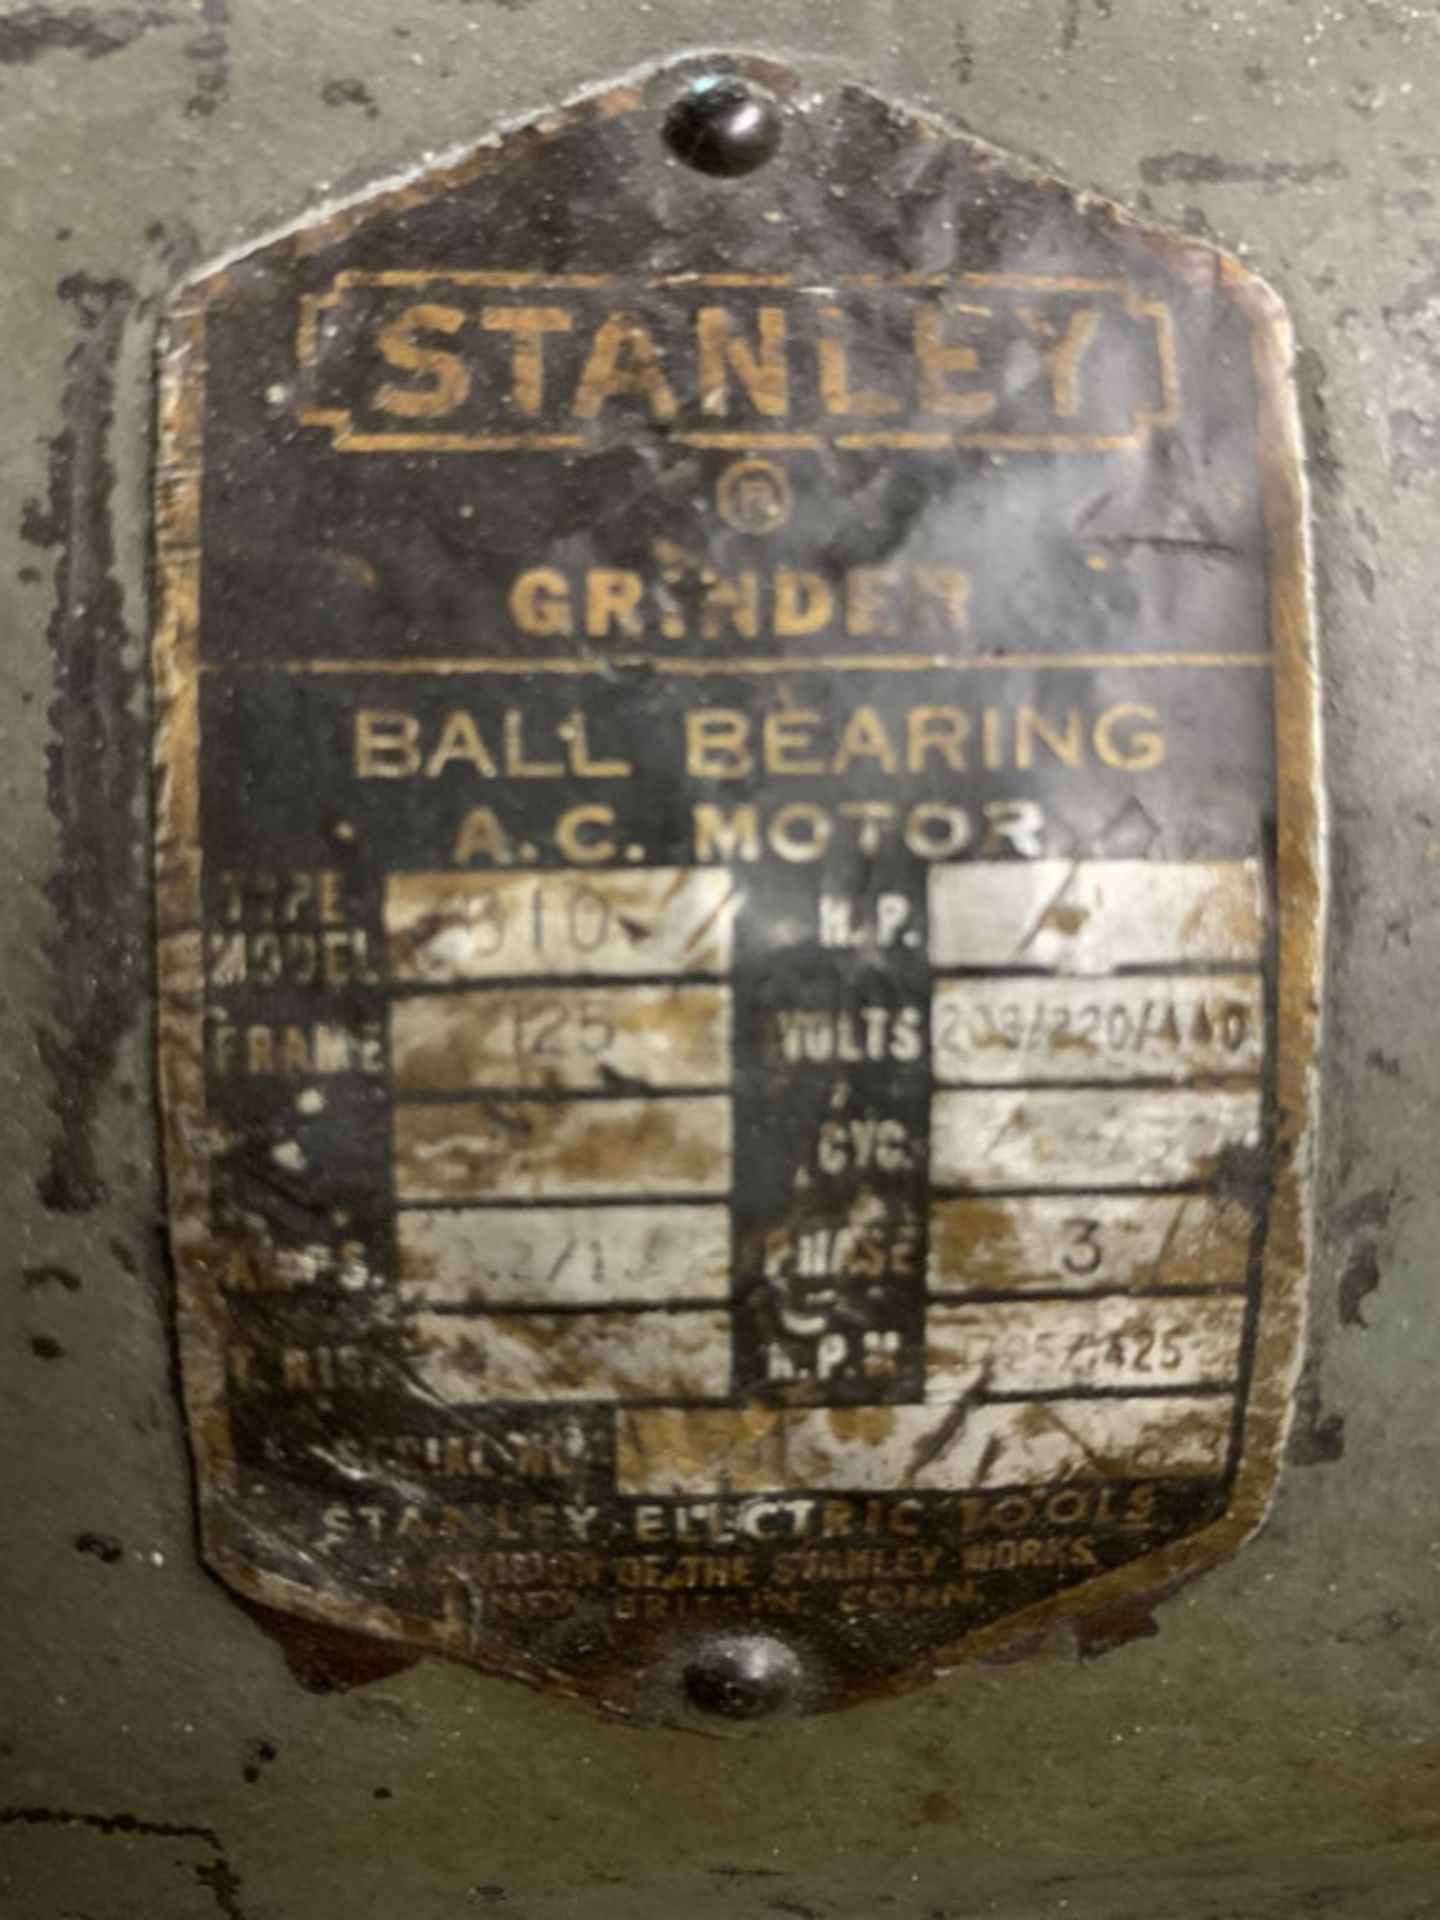 Bench Grinder, Stanley Model 610G, 3 phase - Image 2 of 2